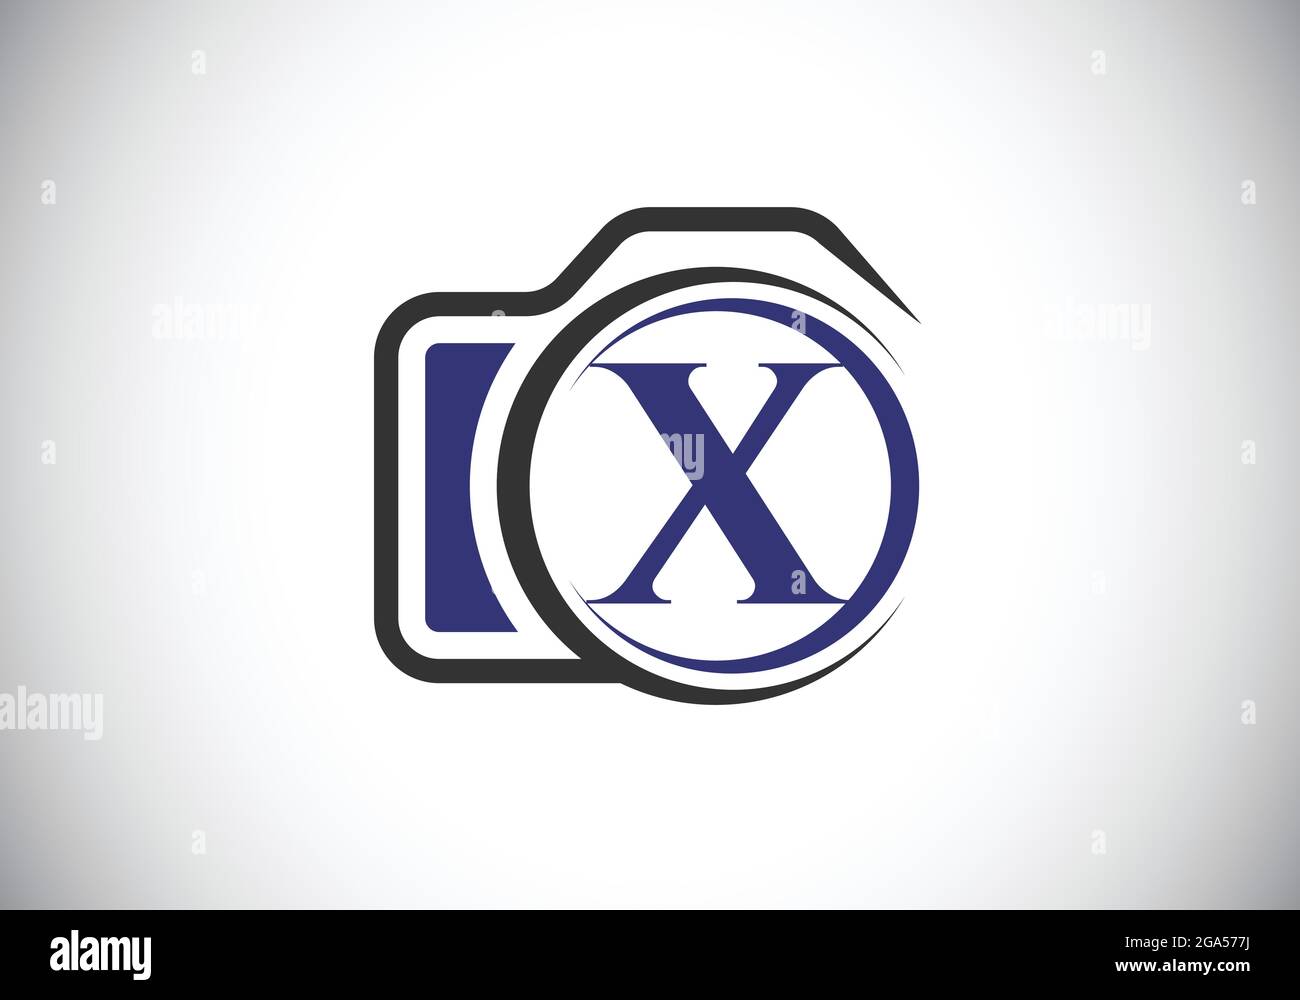 Lettre initiale du X monogramme avec une icône d'appareil photo. Illustration vectorielle du logo de photographie. Design moderne du logo pour les entreprises et les entreprises de photographie Illustration de Vecteur